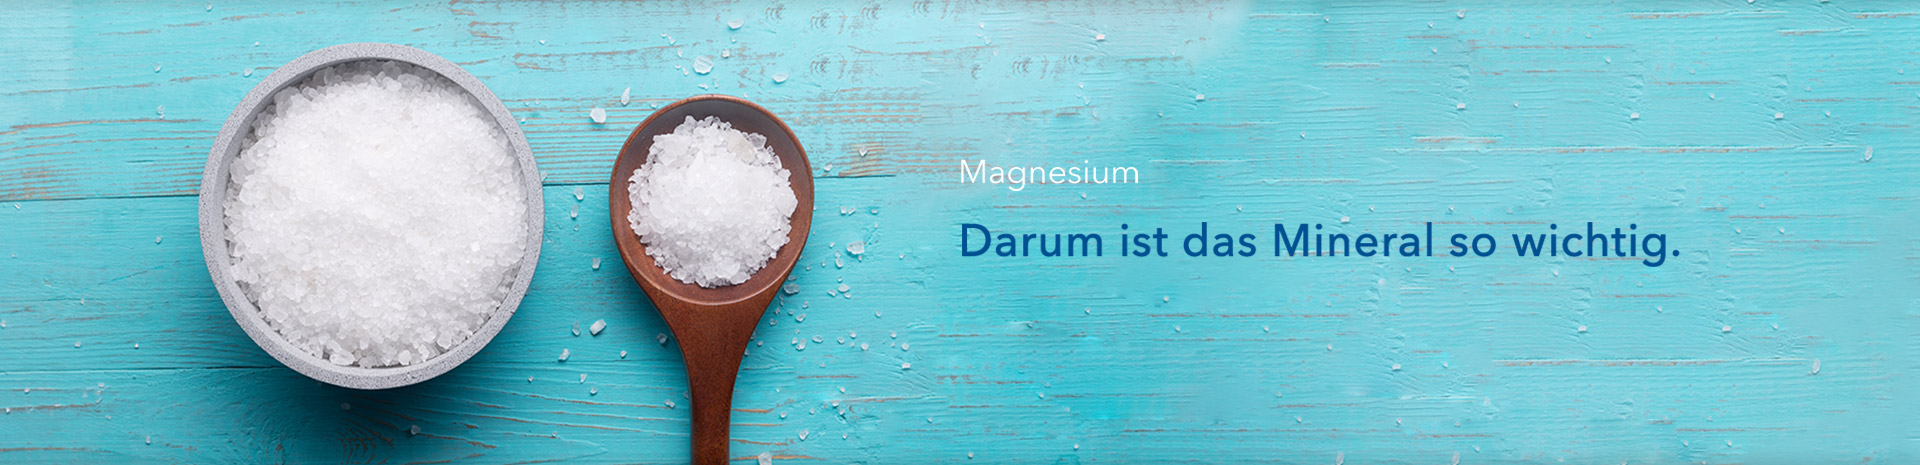 Magnesium - Warum ist das Mineral so wichtig 